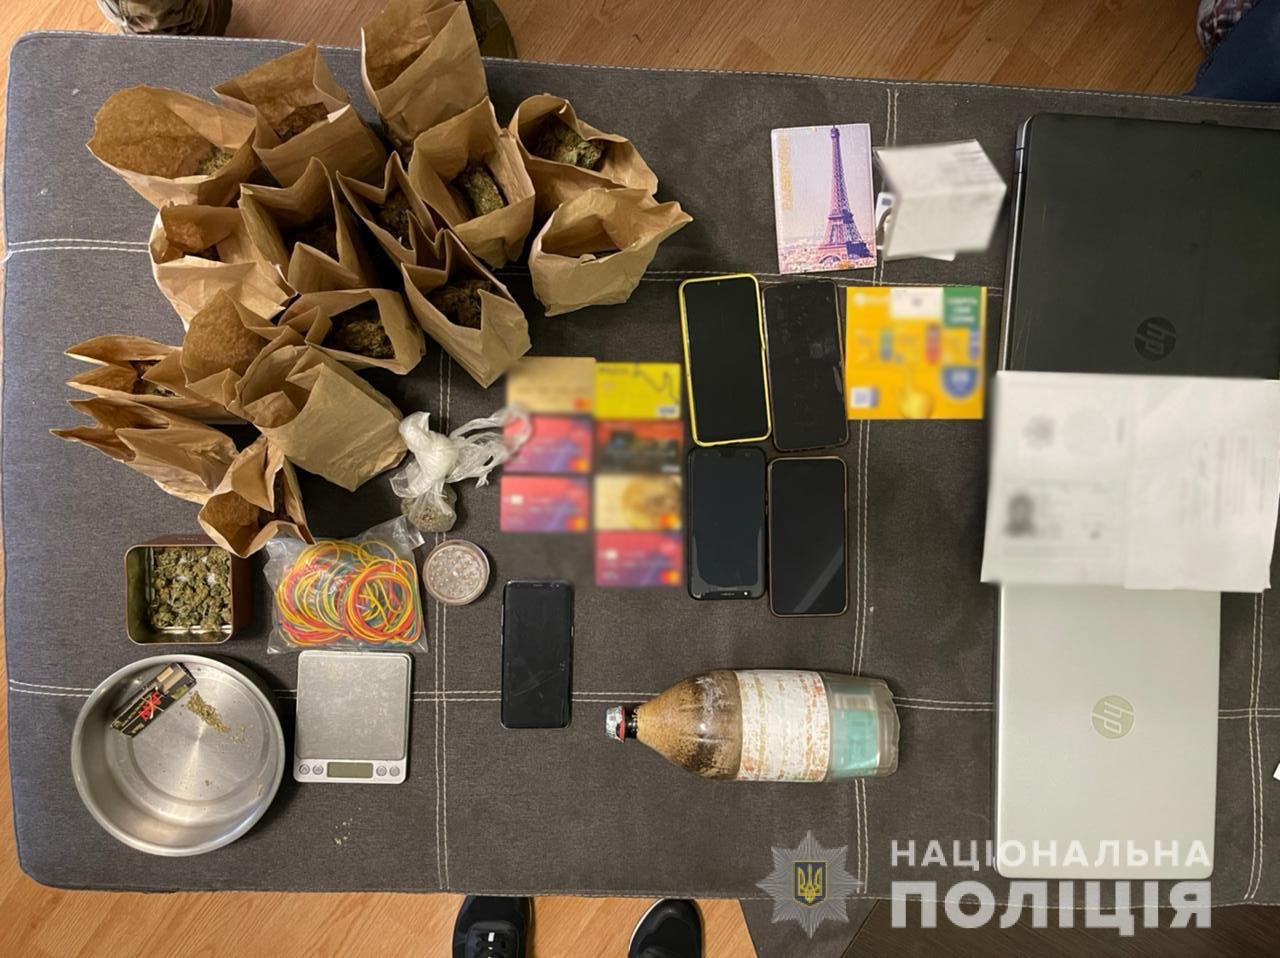 В Харькове нигериец распространял наркотики. ФОТО